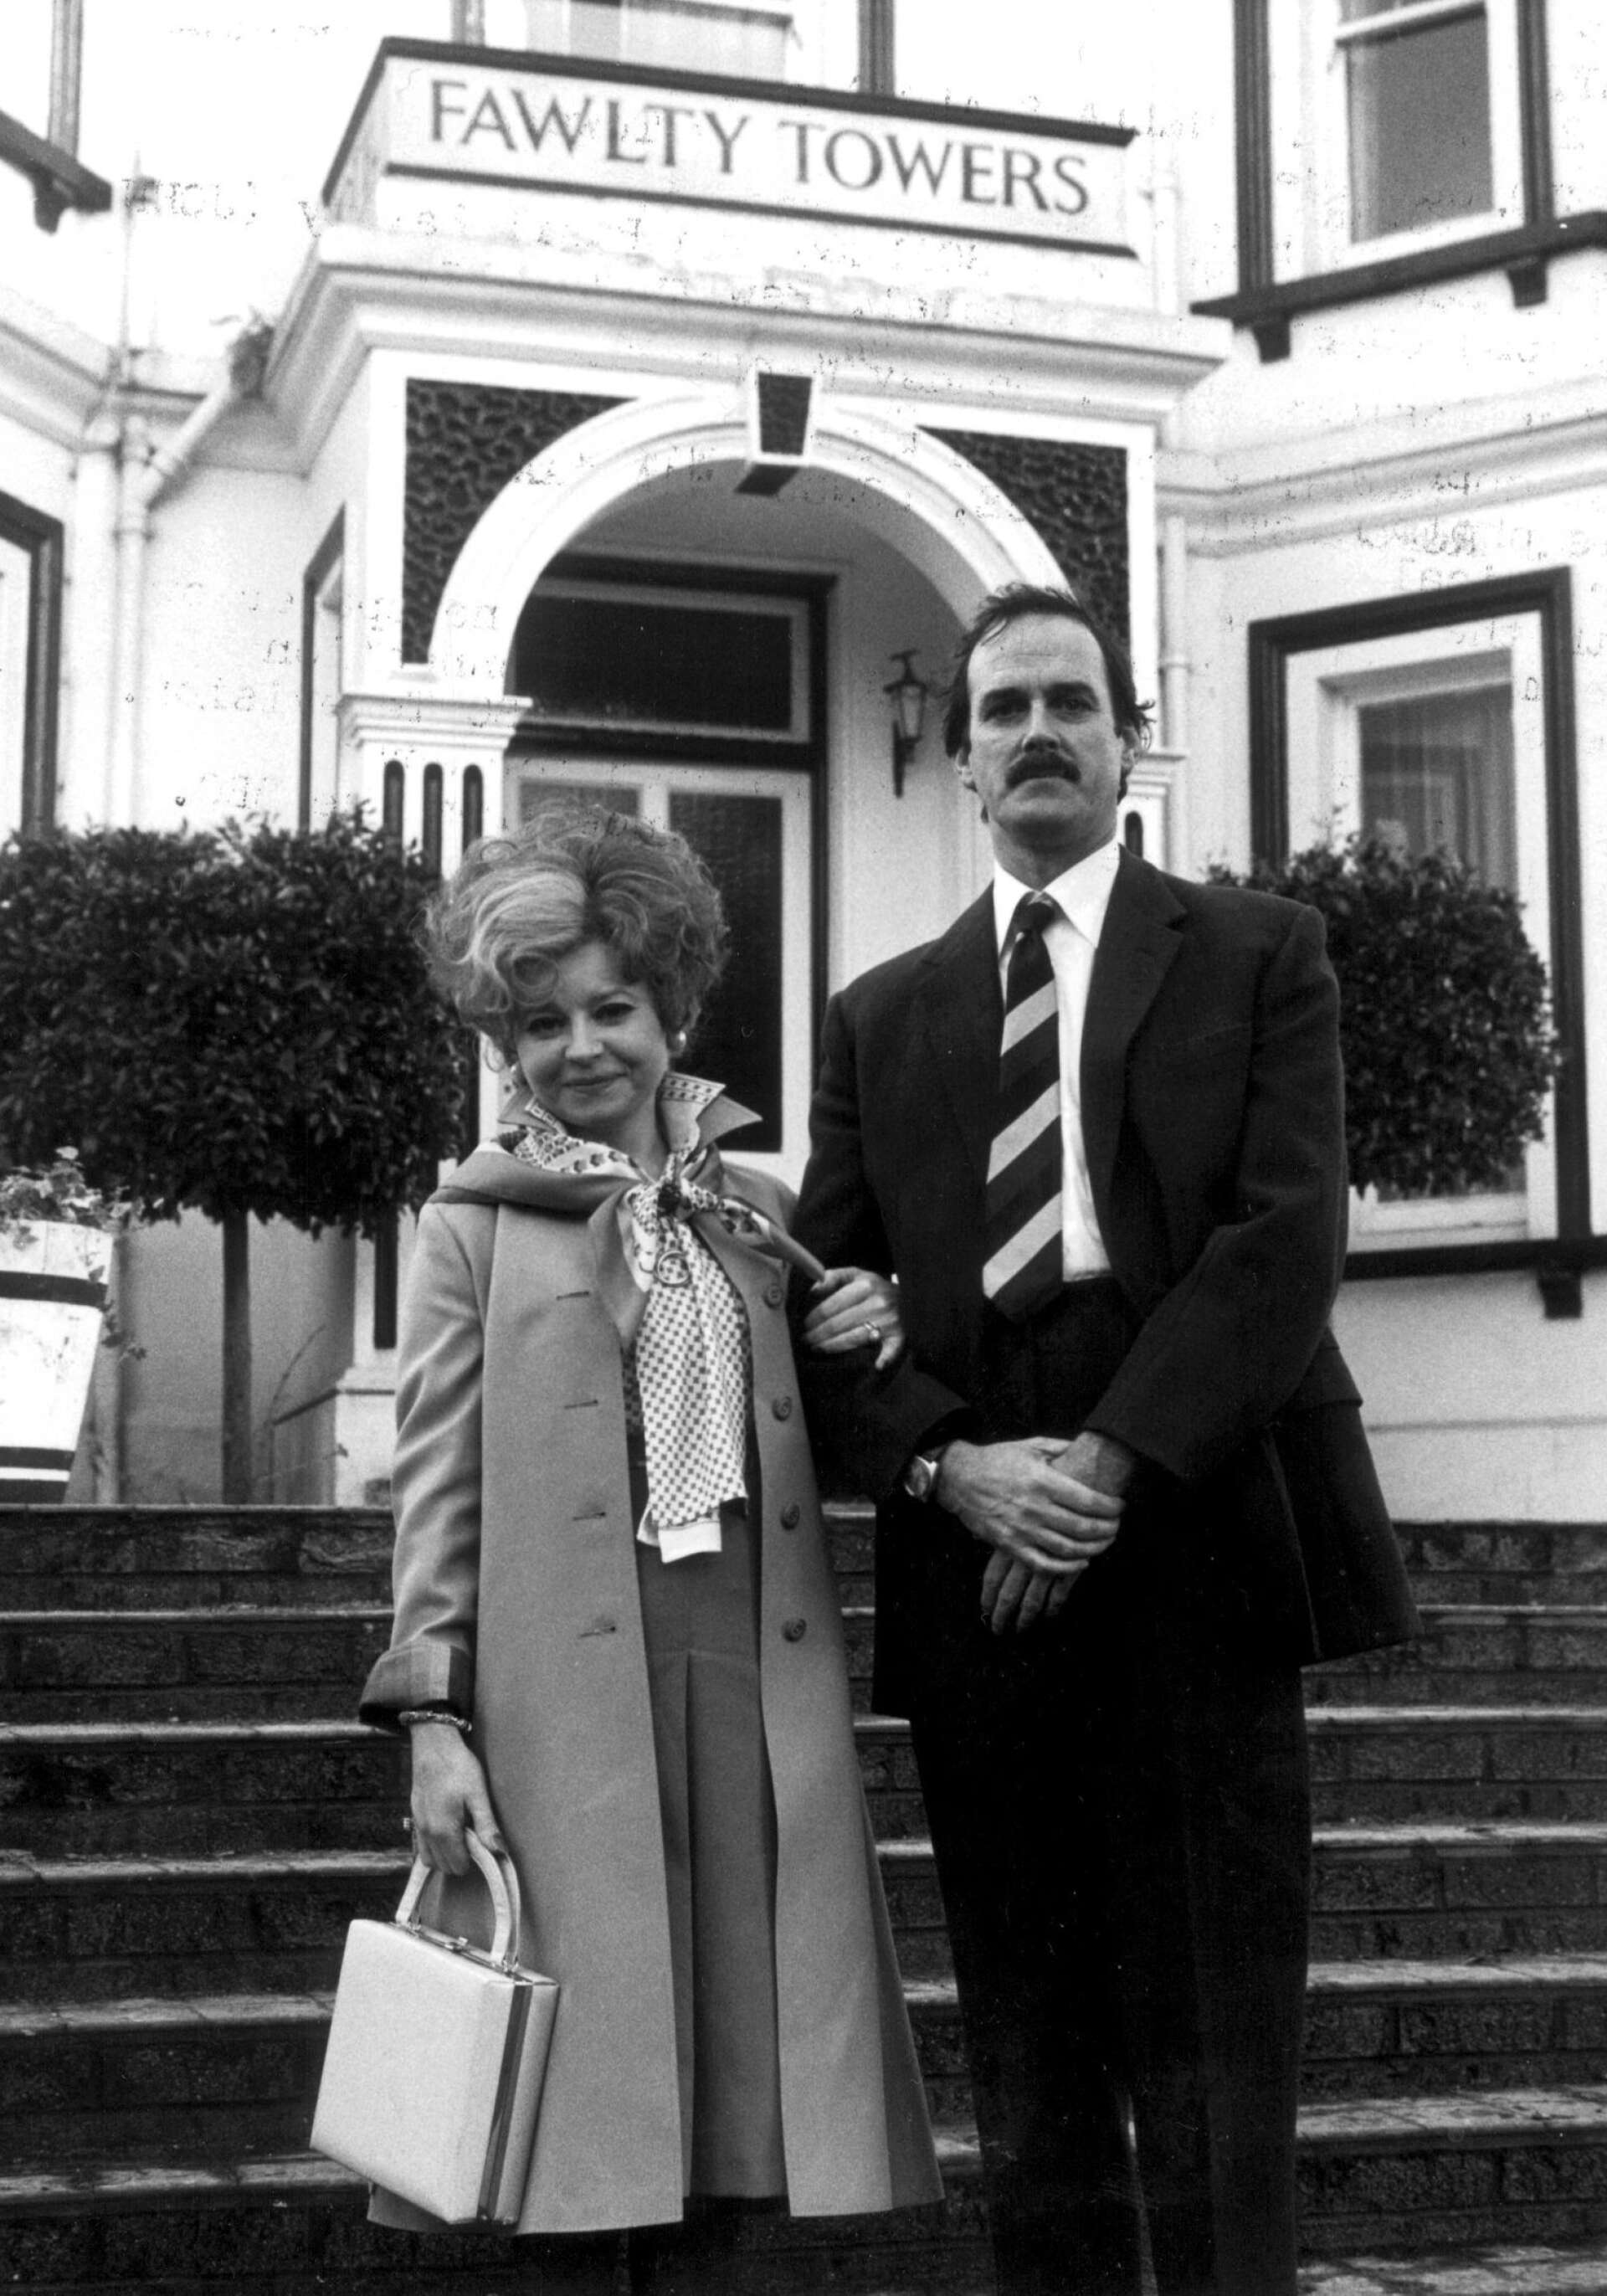 Här ses Prunella Scales som Sybil Fawlty och John Cleese som Basil Fawlty utanför hotellet Fawlty Towers i Torquay på engelska sydkusten.